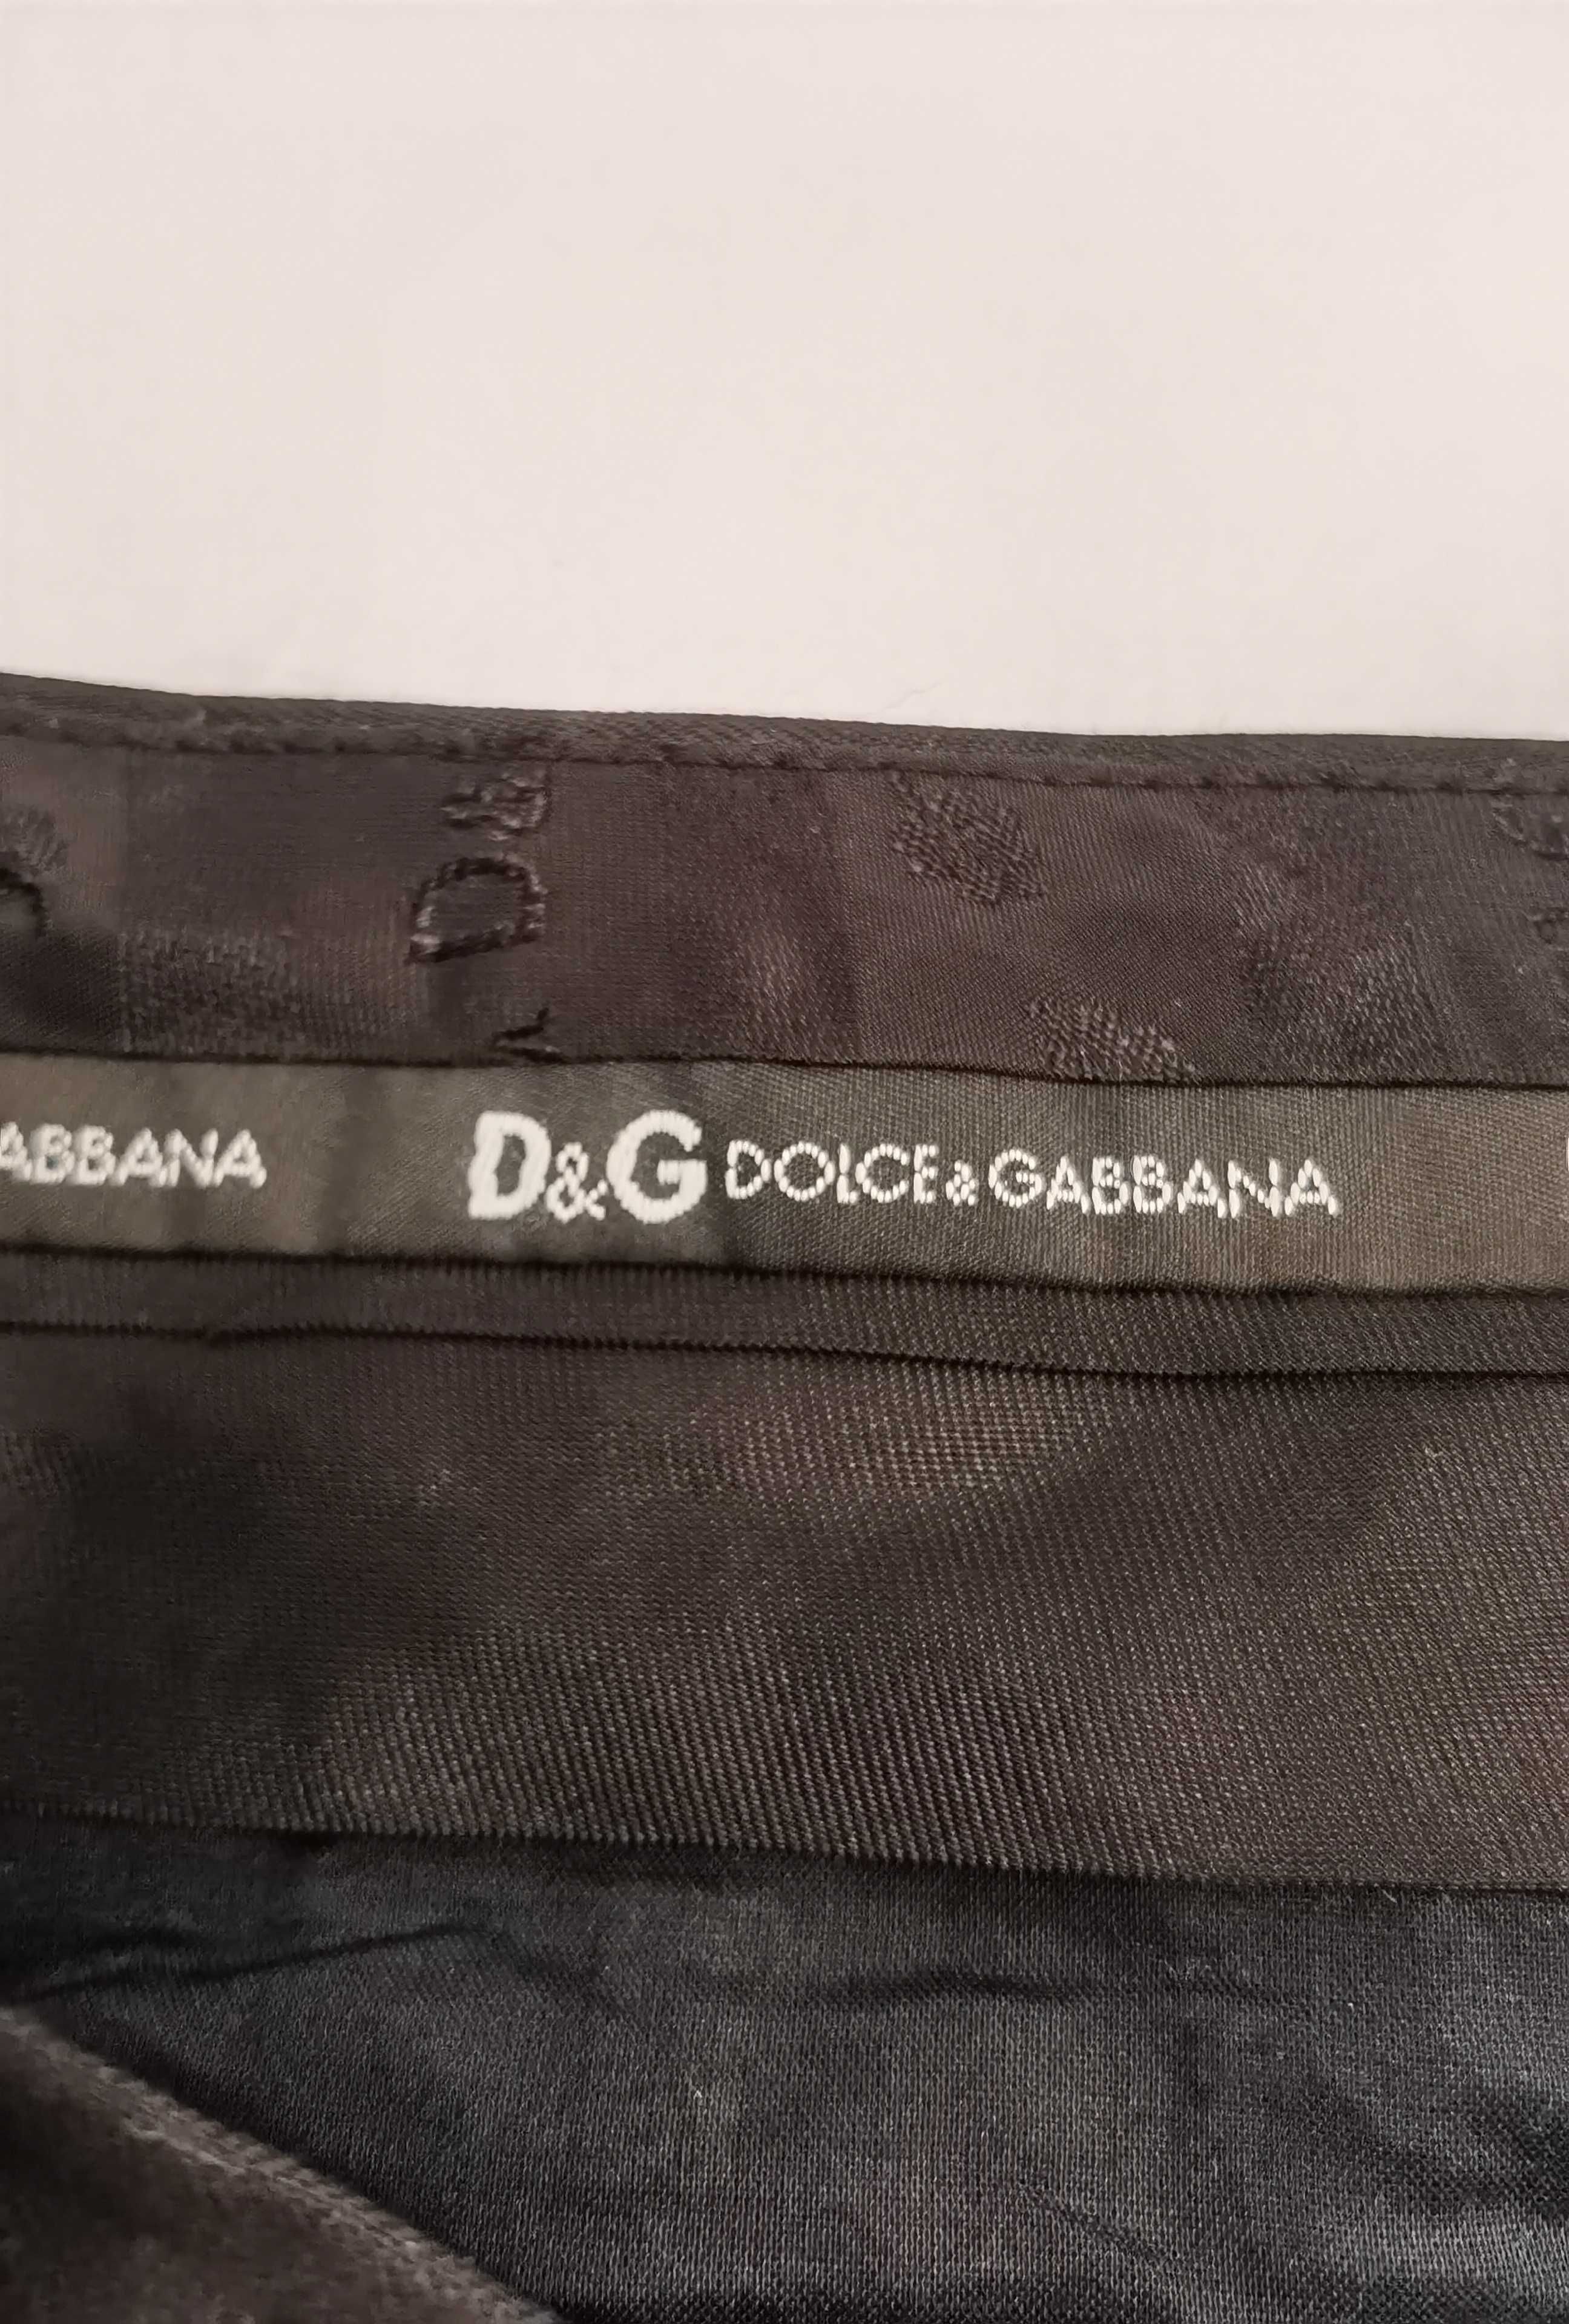 Pantaloni Dolce Gabbana mărime S - M damă lână și mătase